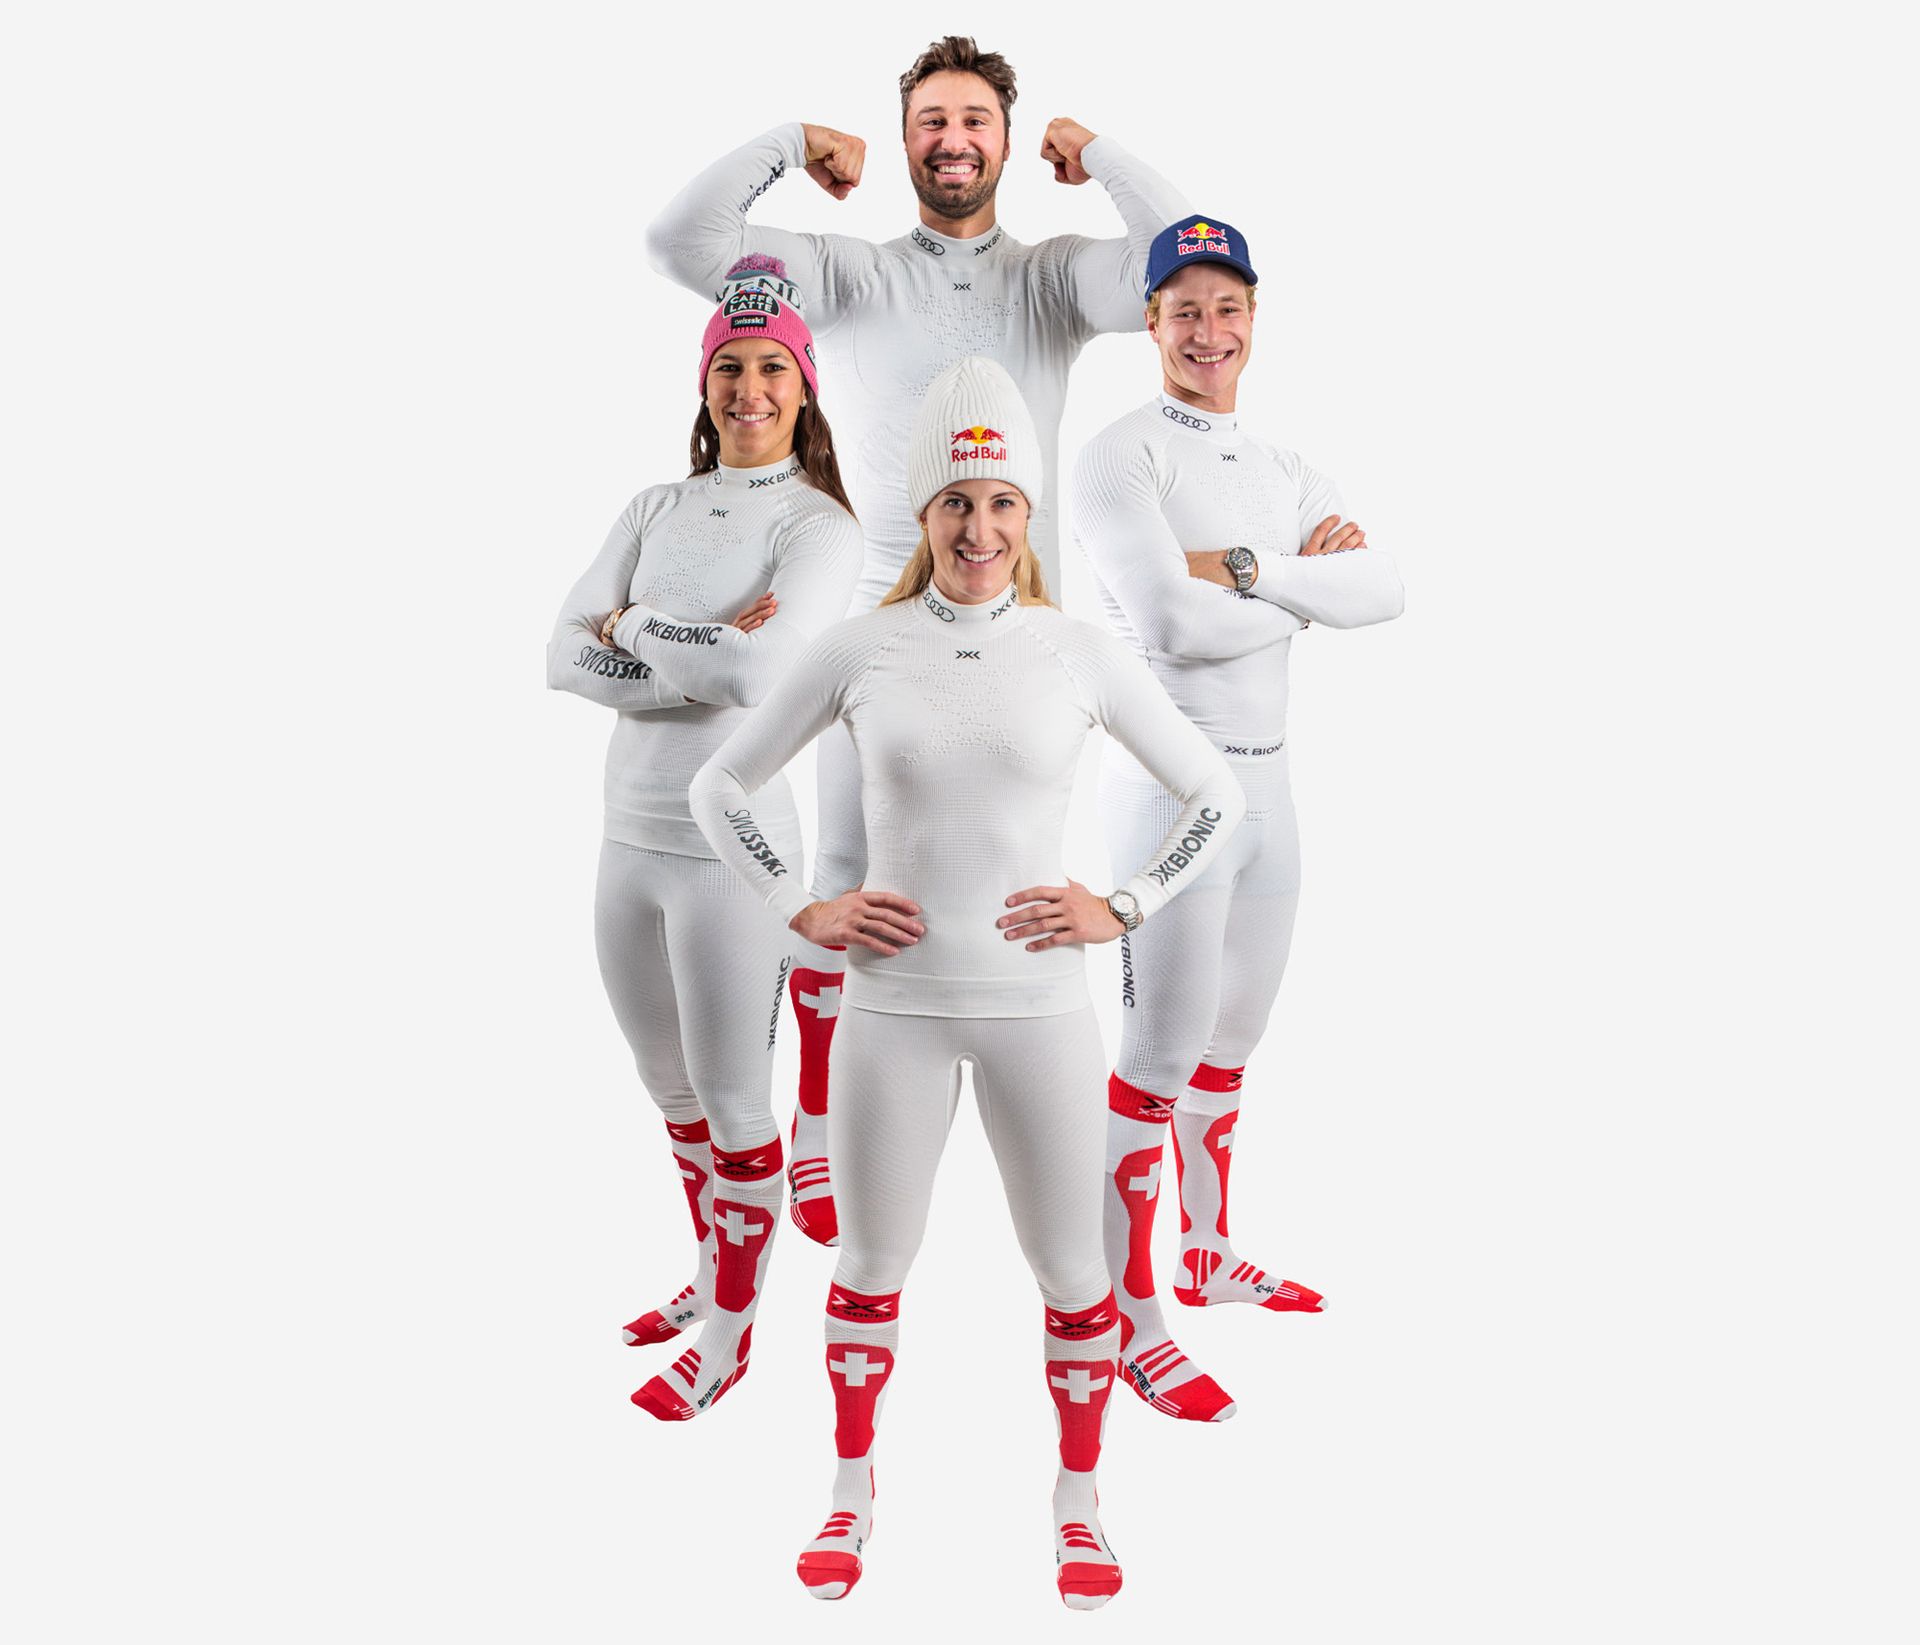 X Bionic Swiss Ski Team